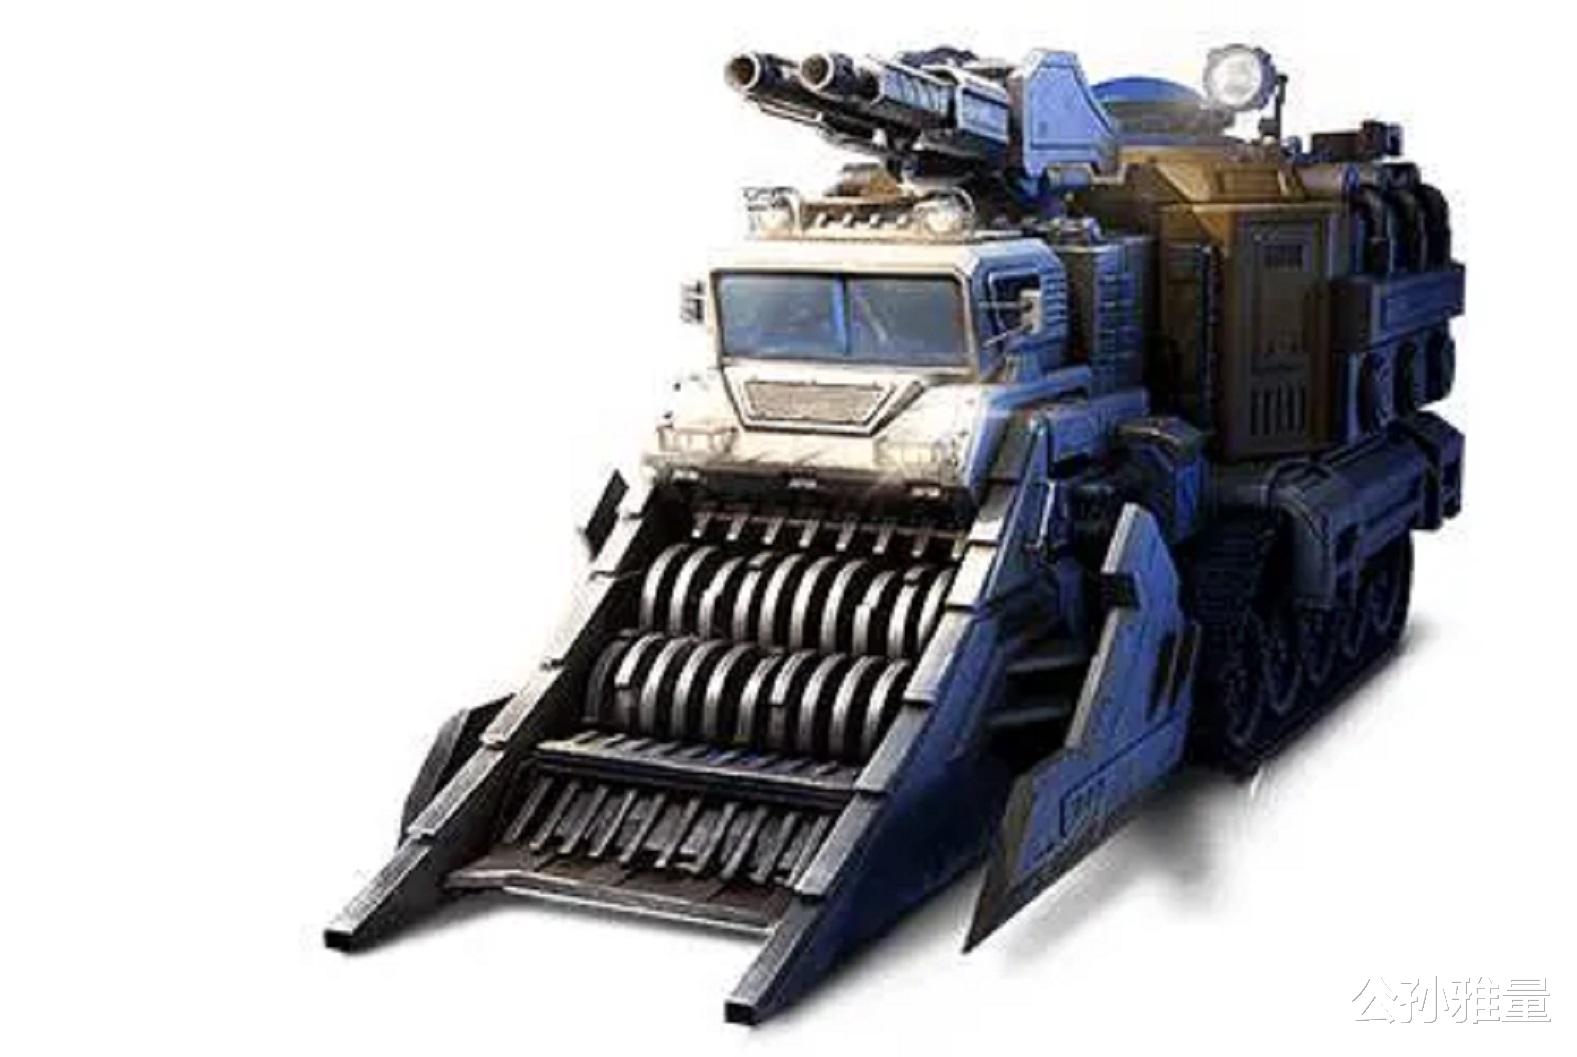 红警2：武装采矿车为何被称为牛车？它真的很牛么？